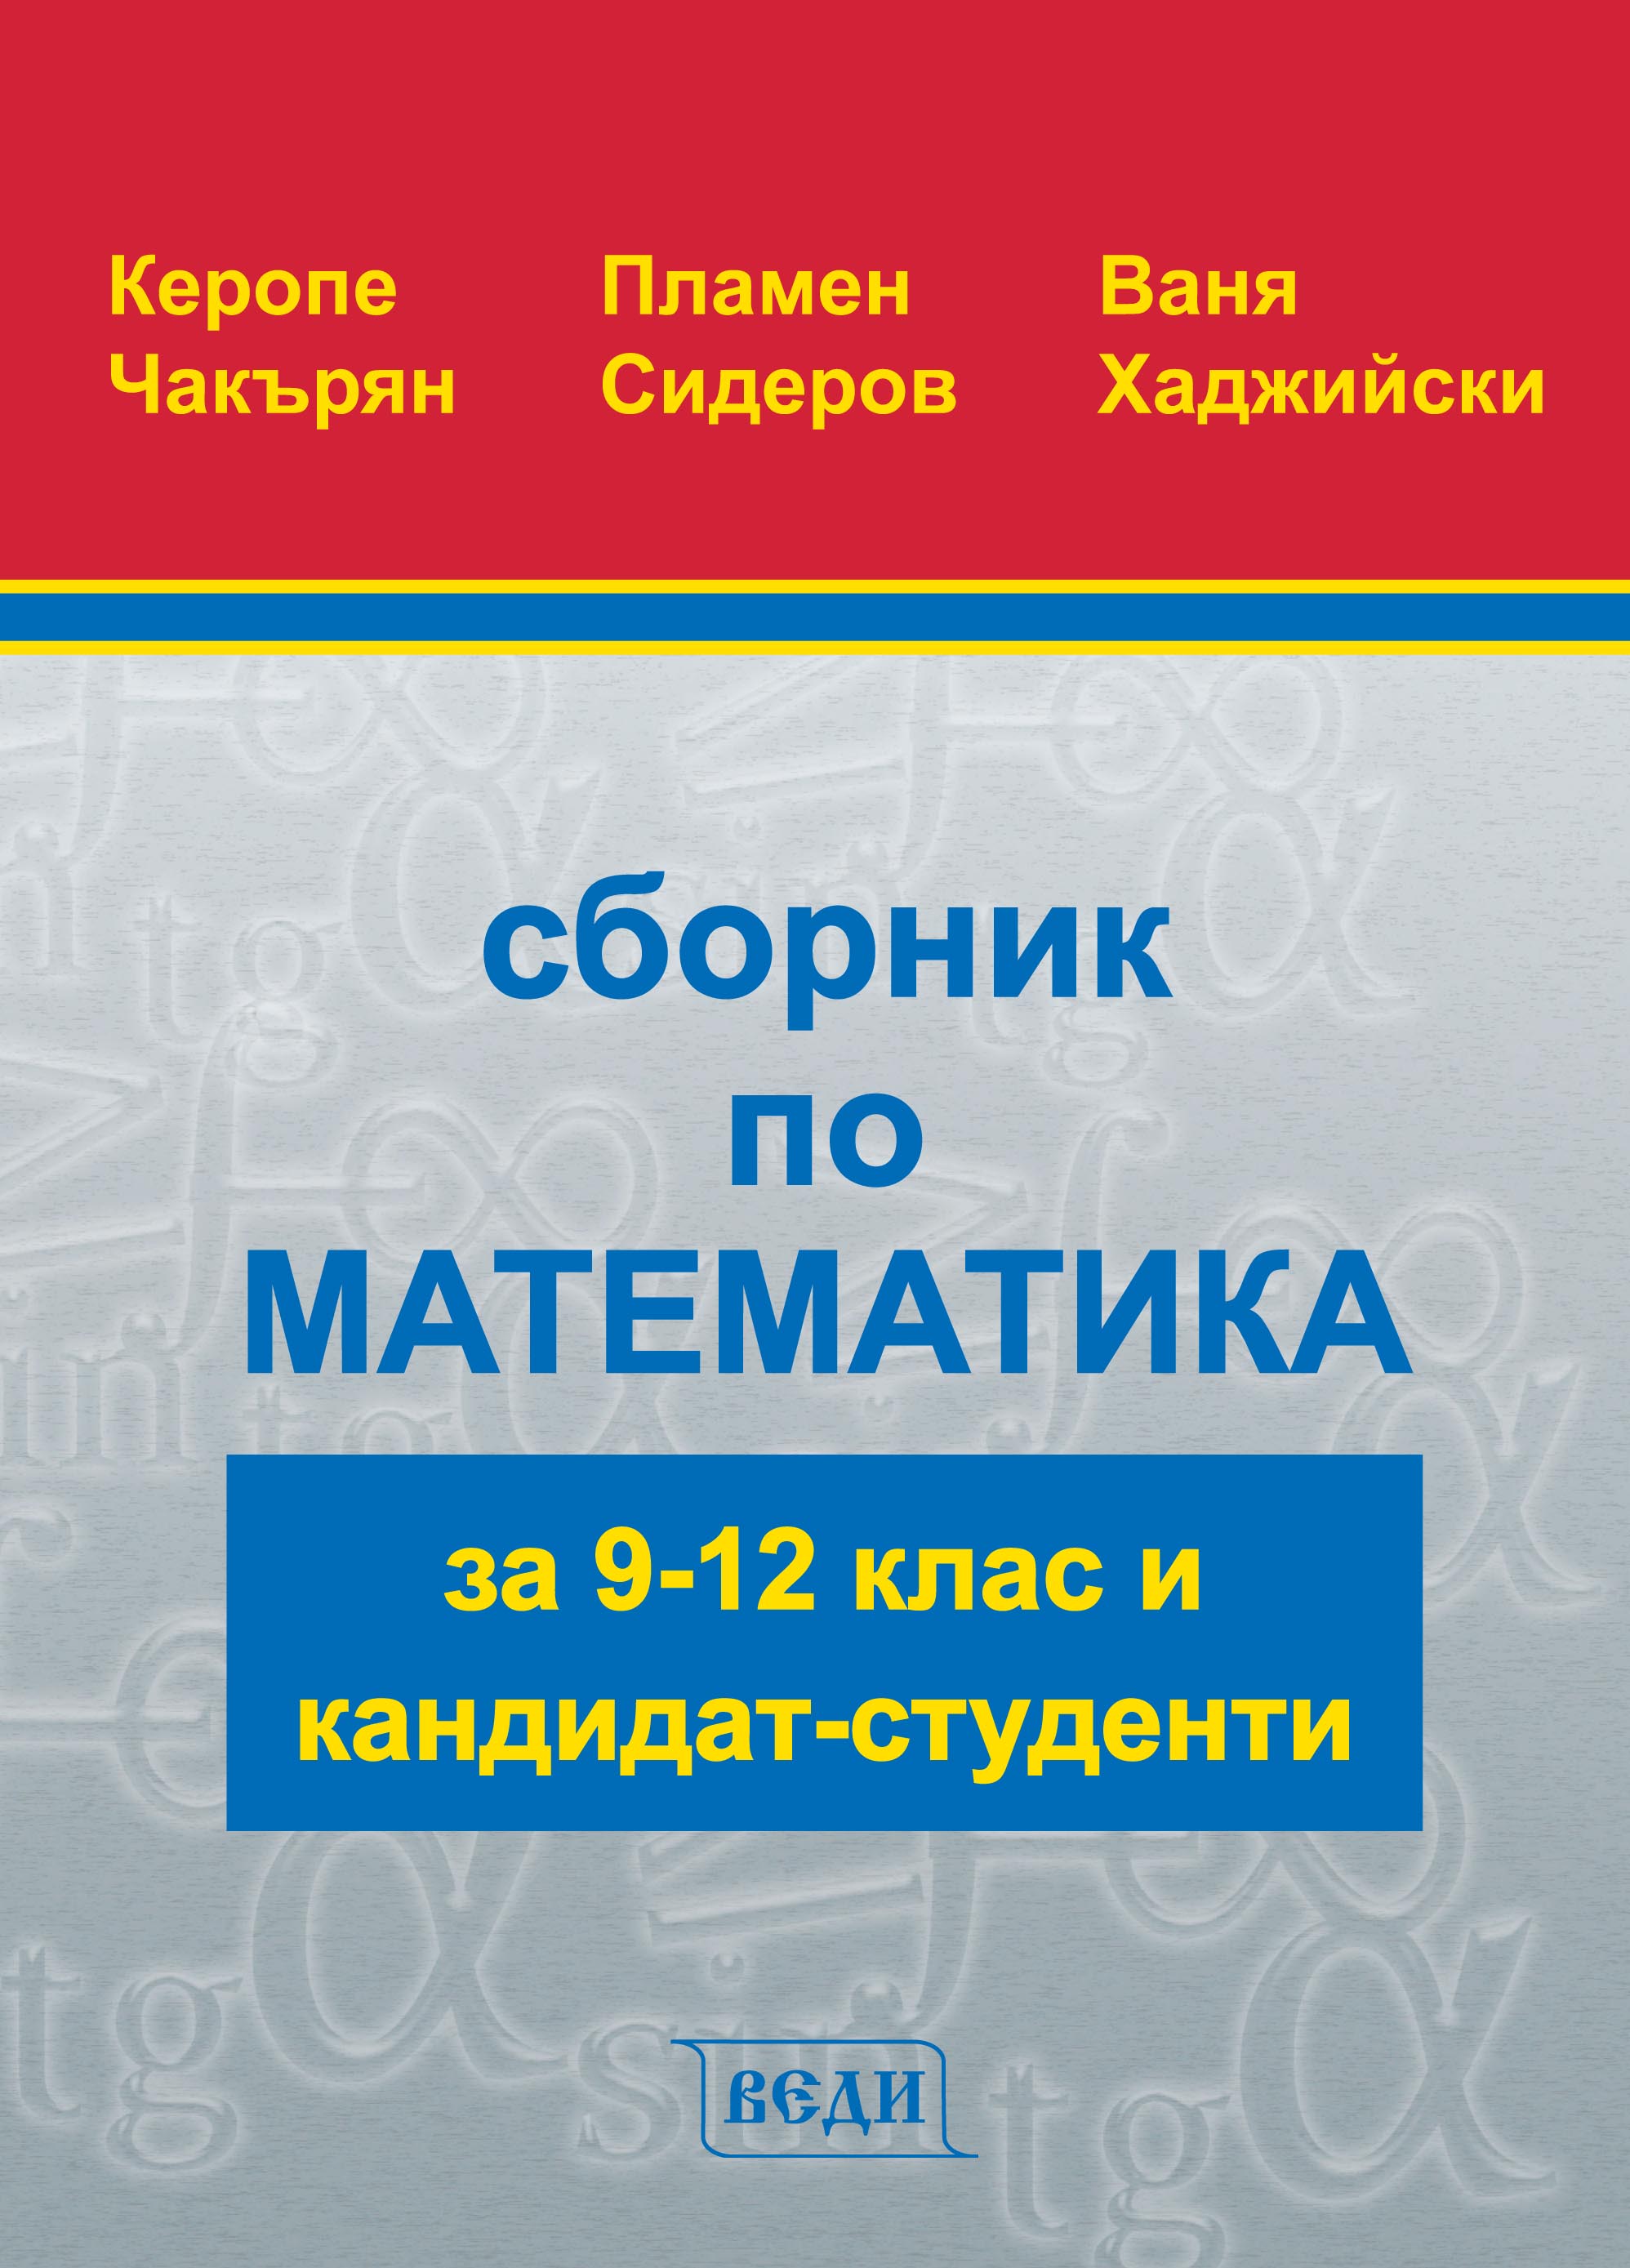 Сборник по математика за 9 - 12 клас и кандидат-студенти - Изчерпана